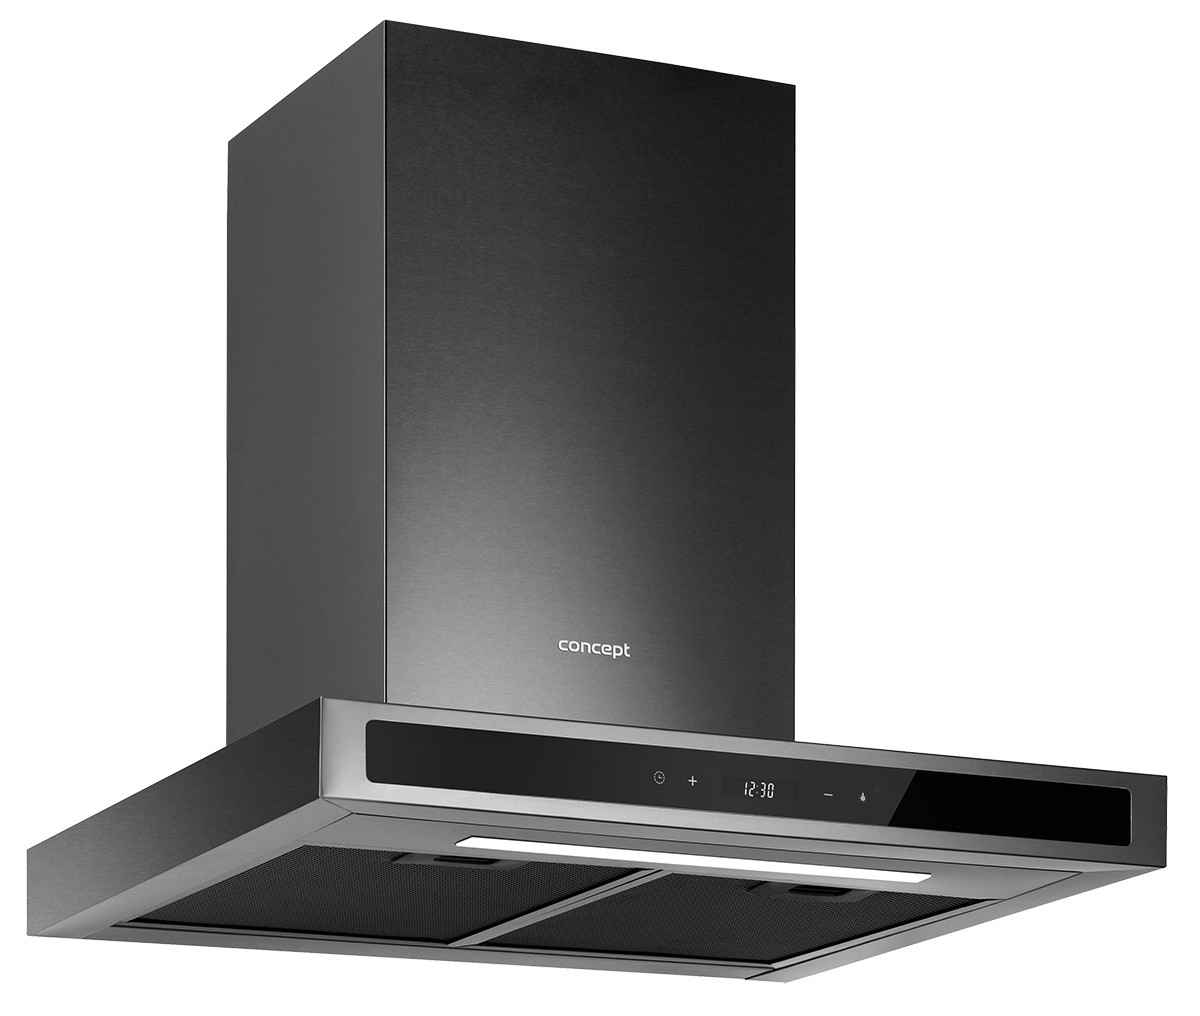 Кухонная вытяжка Concept OPK4960ds цена 14999.00 грн - фотография 2